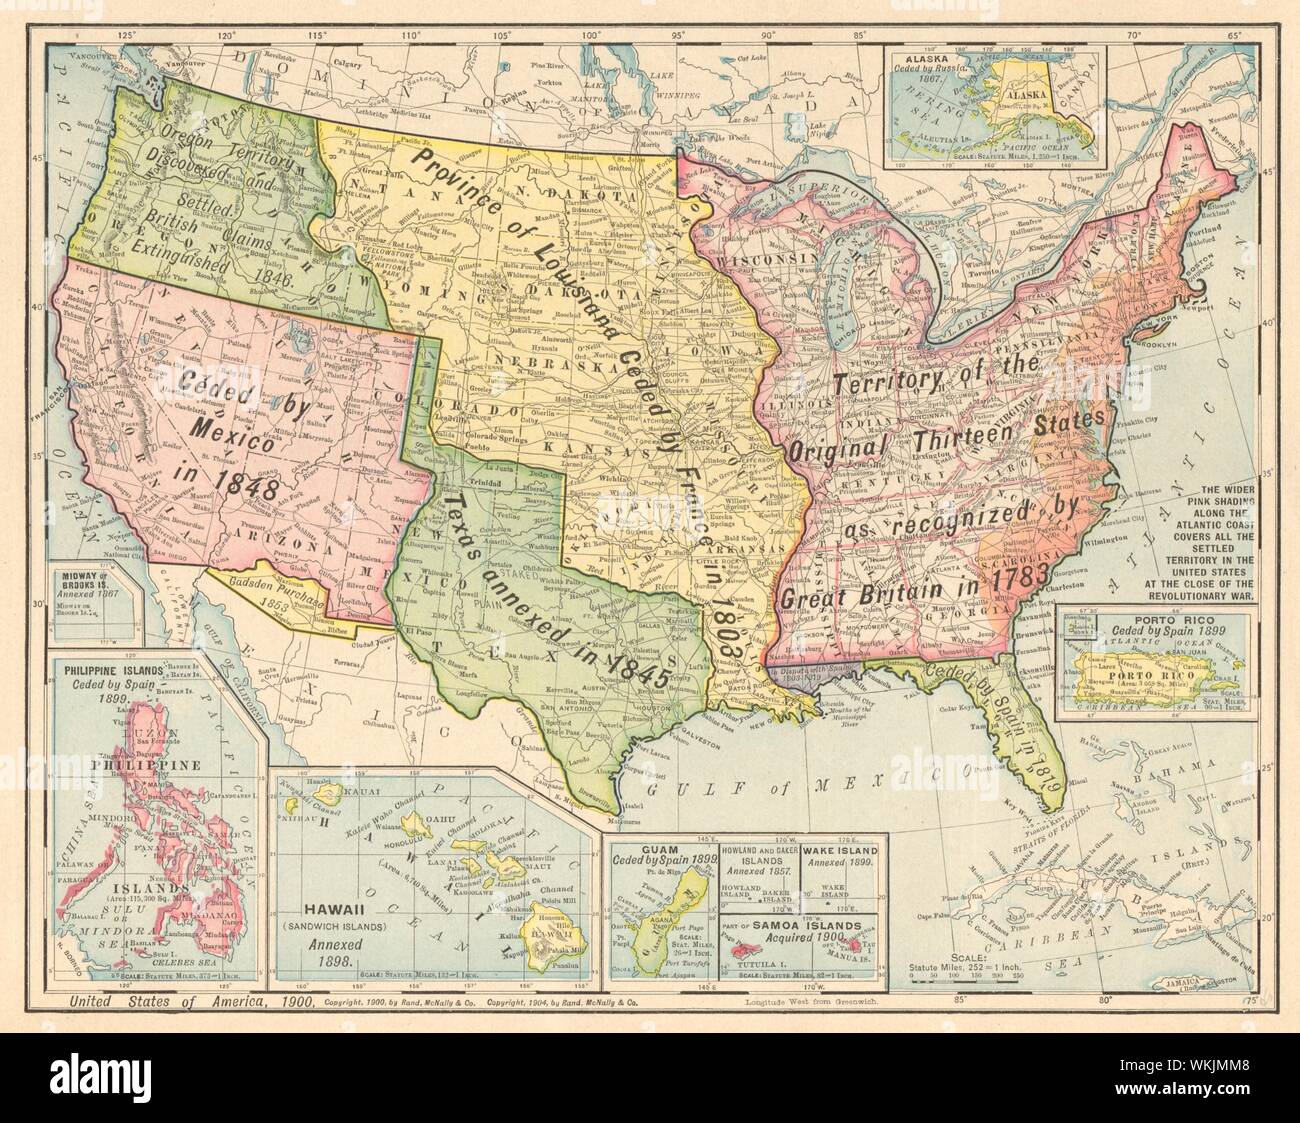 USA territoriale Entwicklung. Gadsden/Louisiana Purchase. RAND MCNALLY 1906 Karte Stockfoto